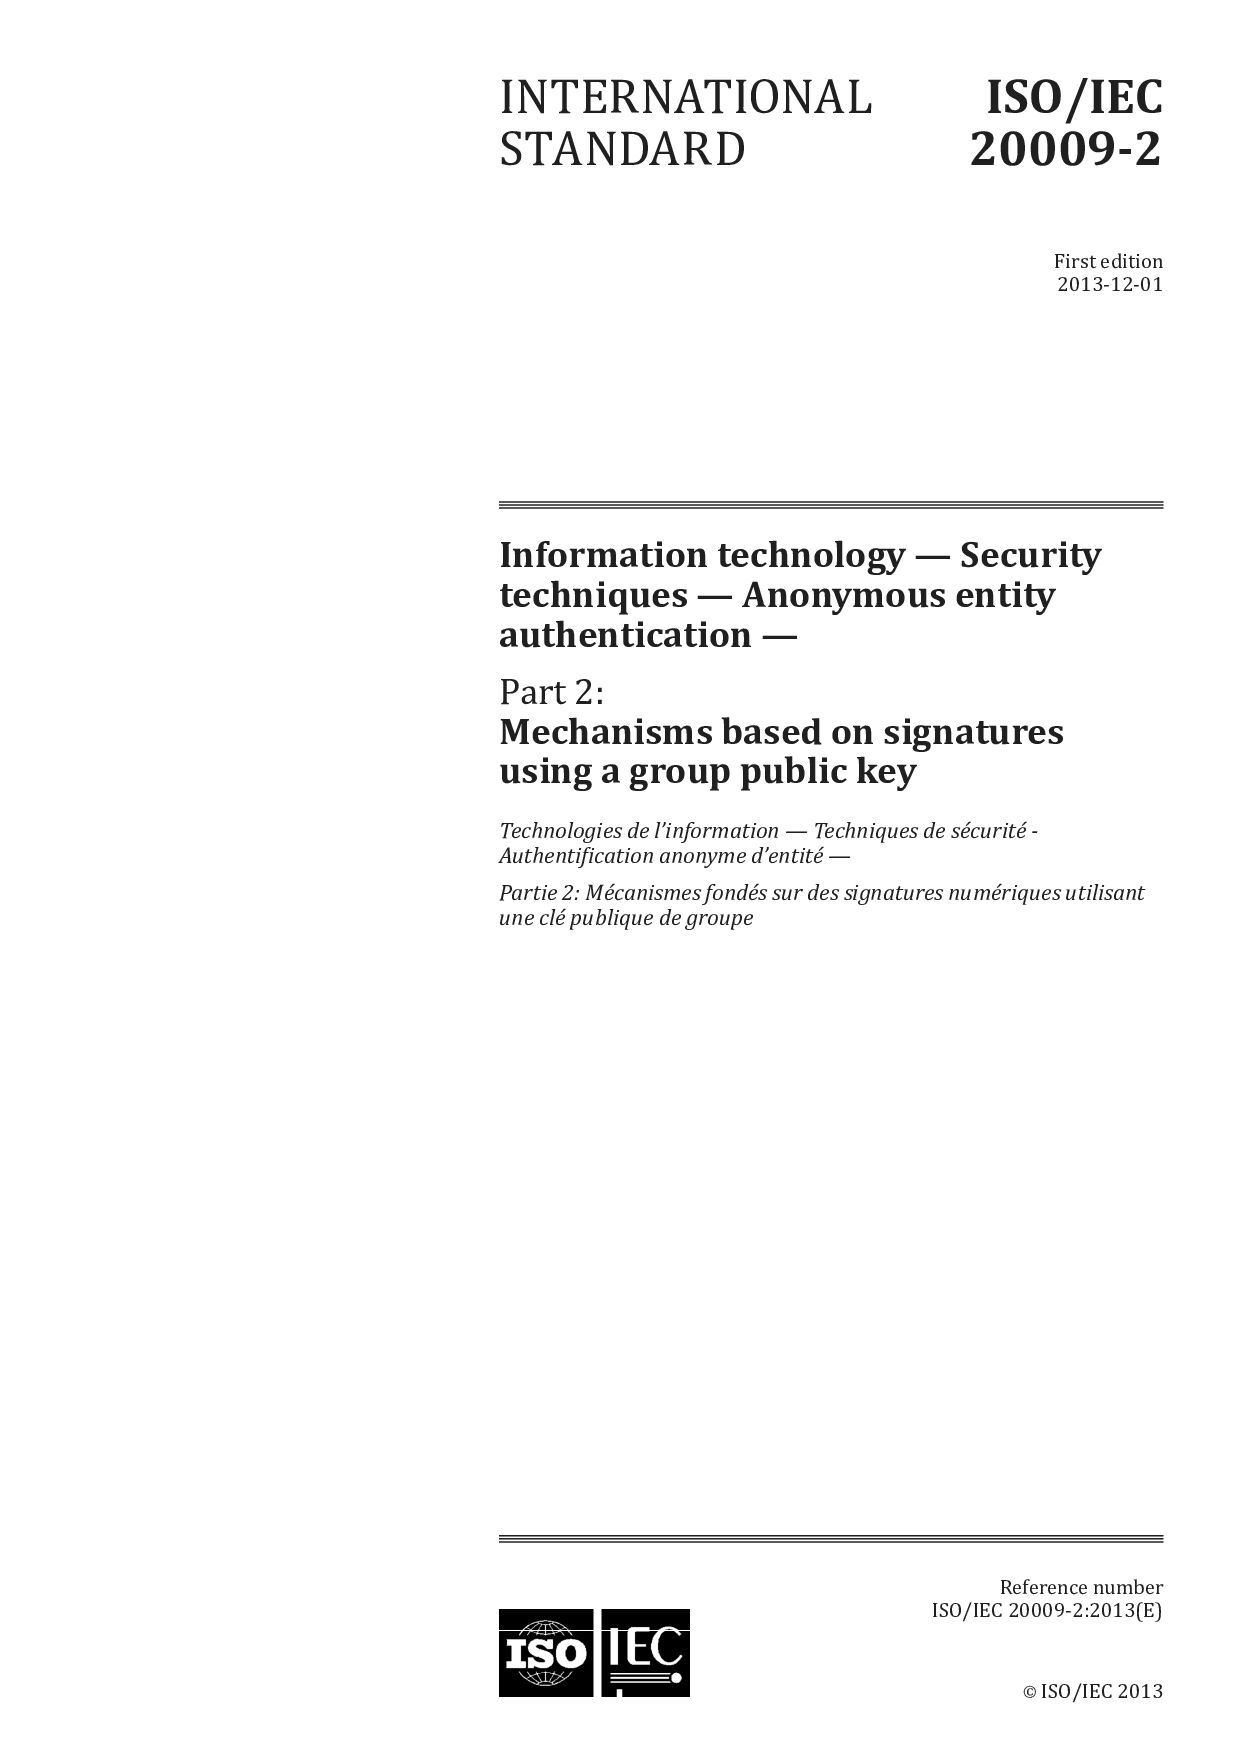 ISO/IEC 20009-2:2013封面图